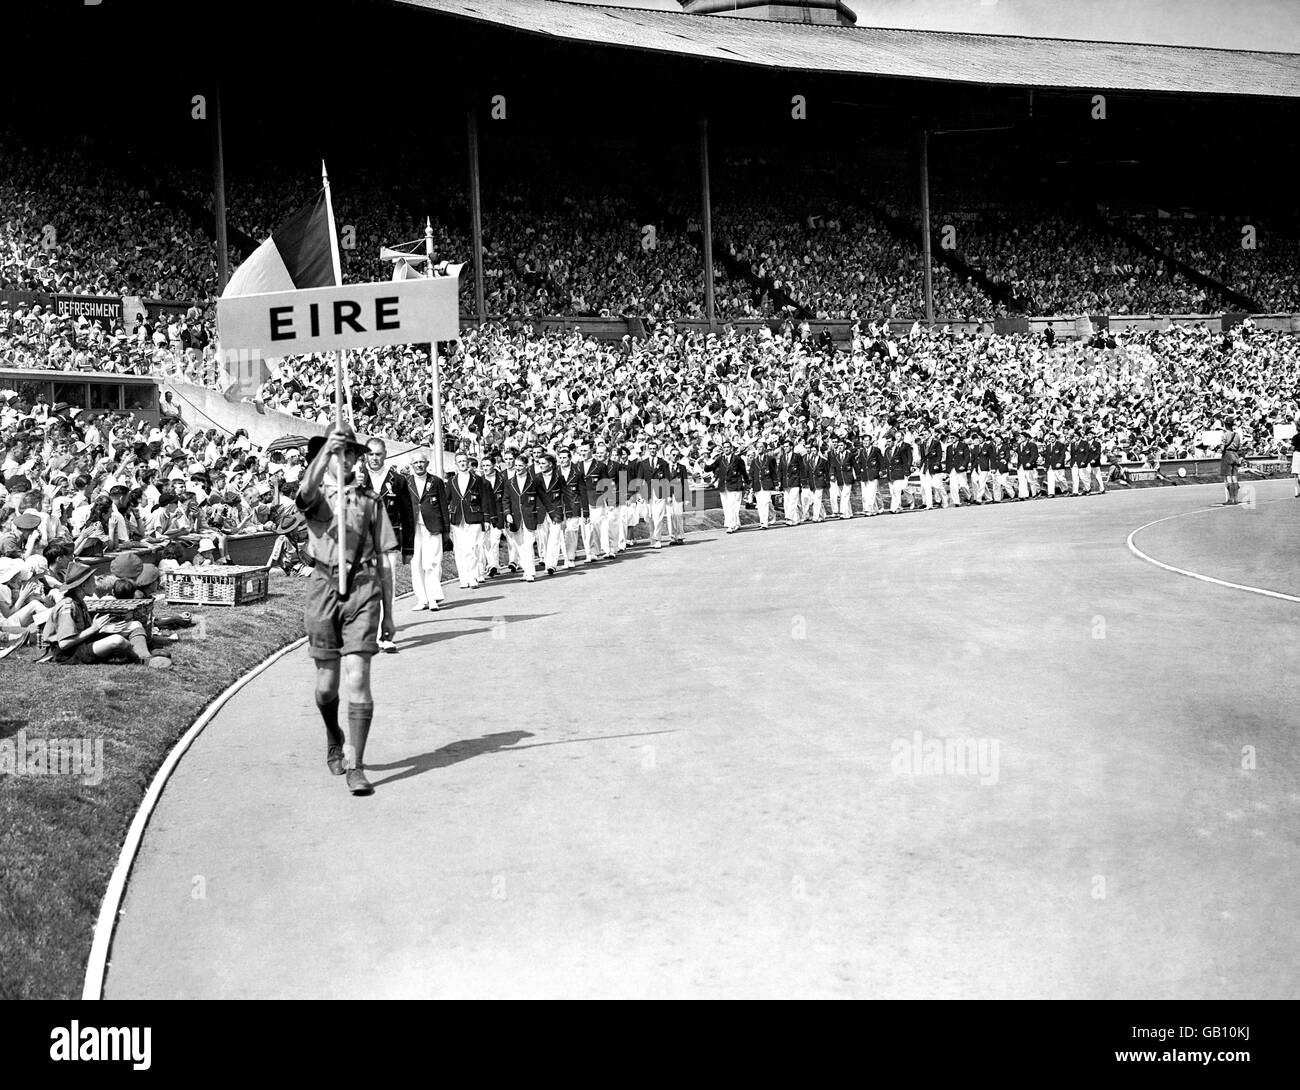 Das Eire-Team marschiert bei der Parade der Teilnehmer während der Eröffnungsfeier der Olympischen Spiele in Wembley durch das Stadion. Stockfoto